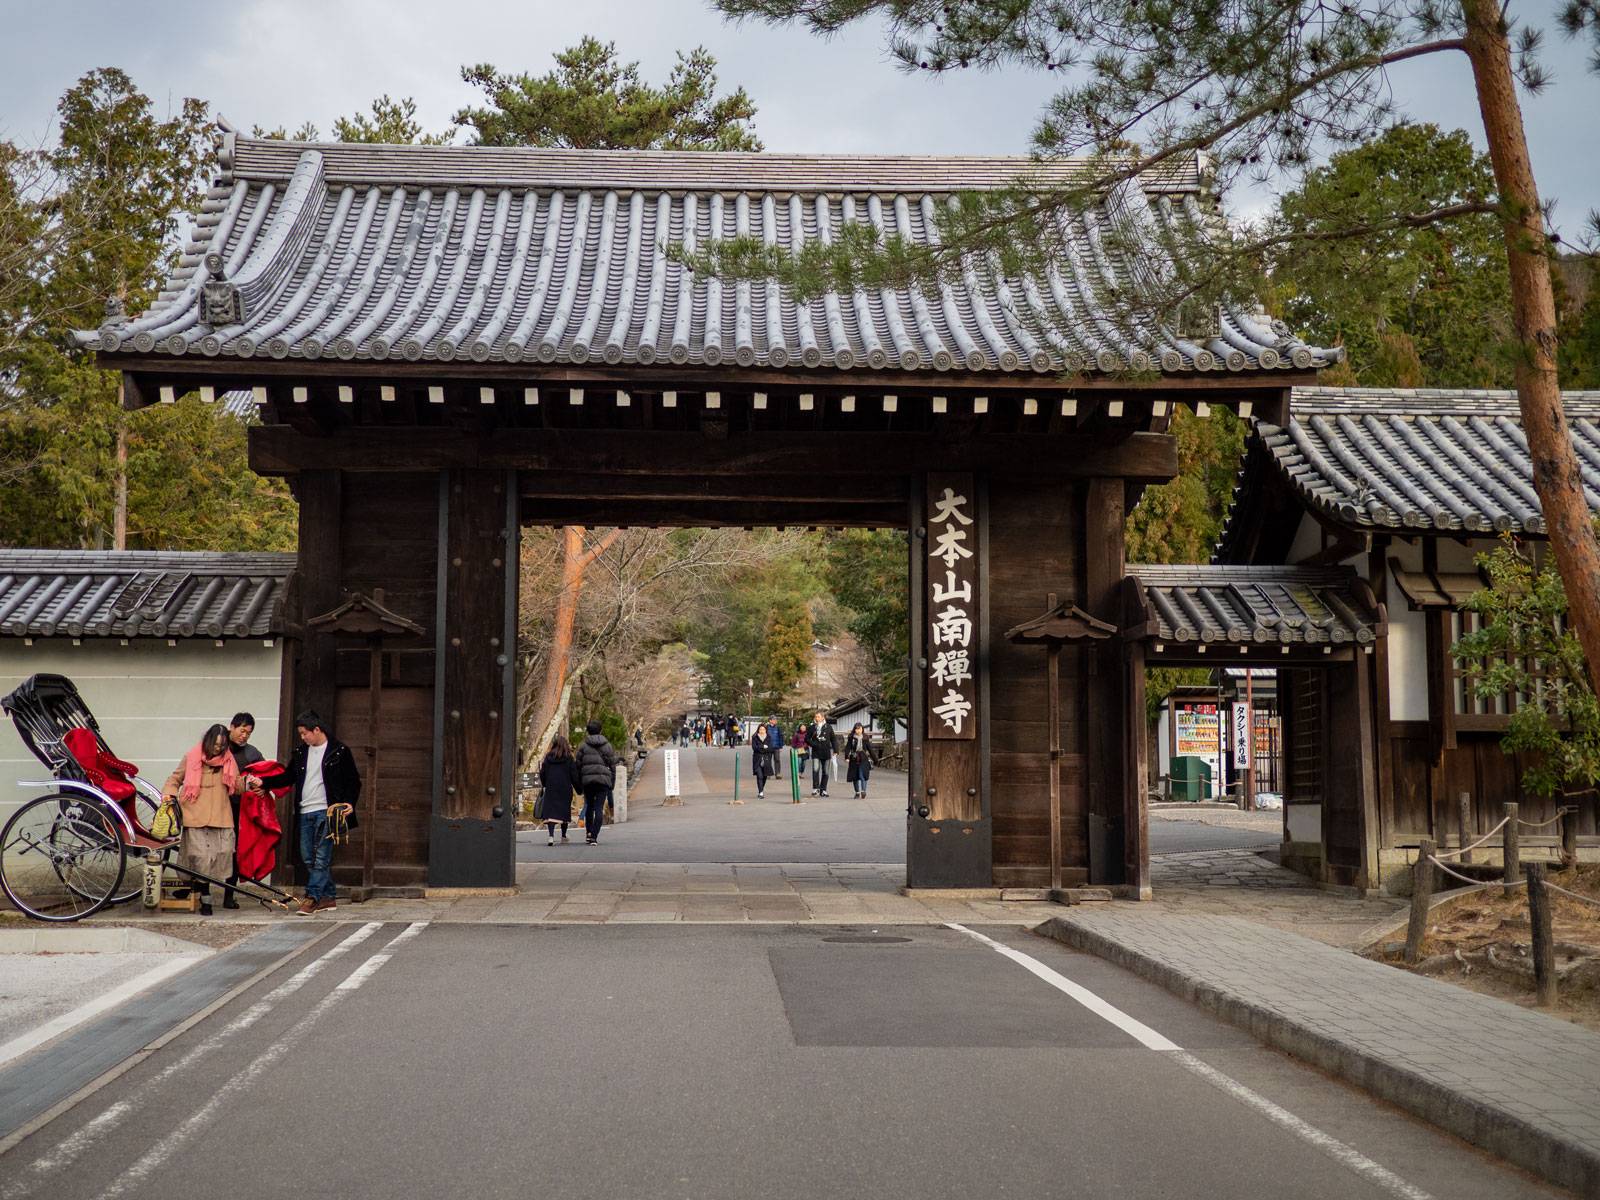 Walking through Nanzen-ji temple entrance